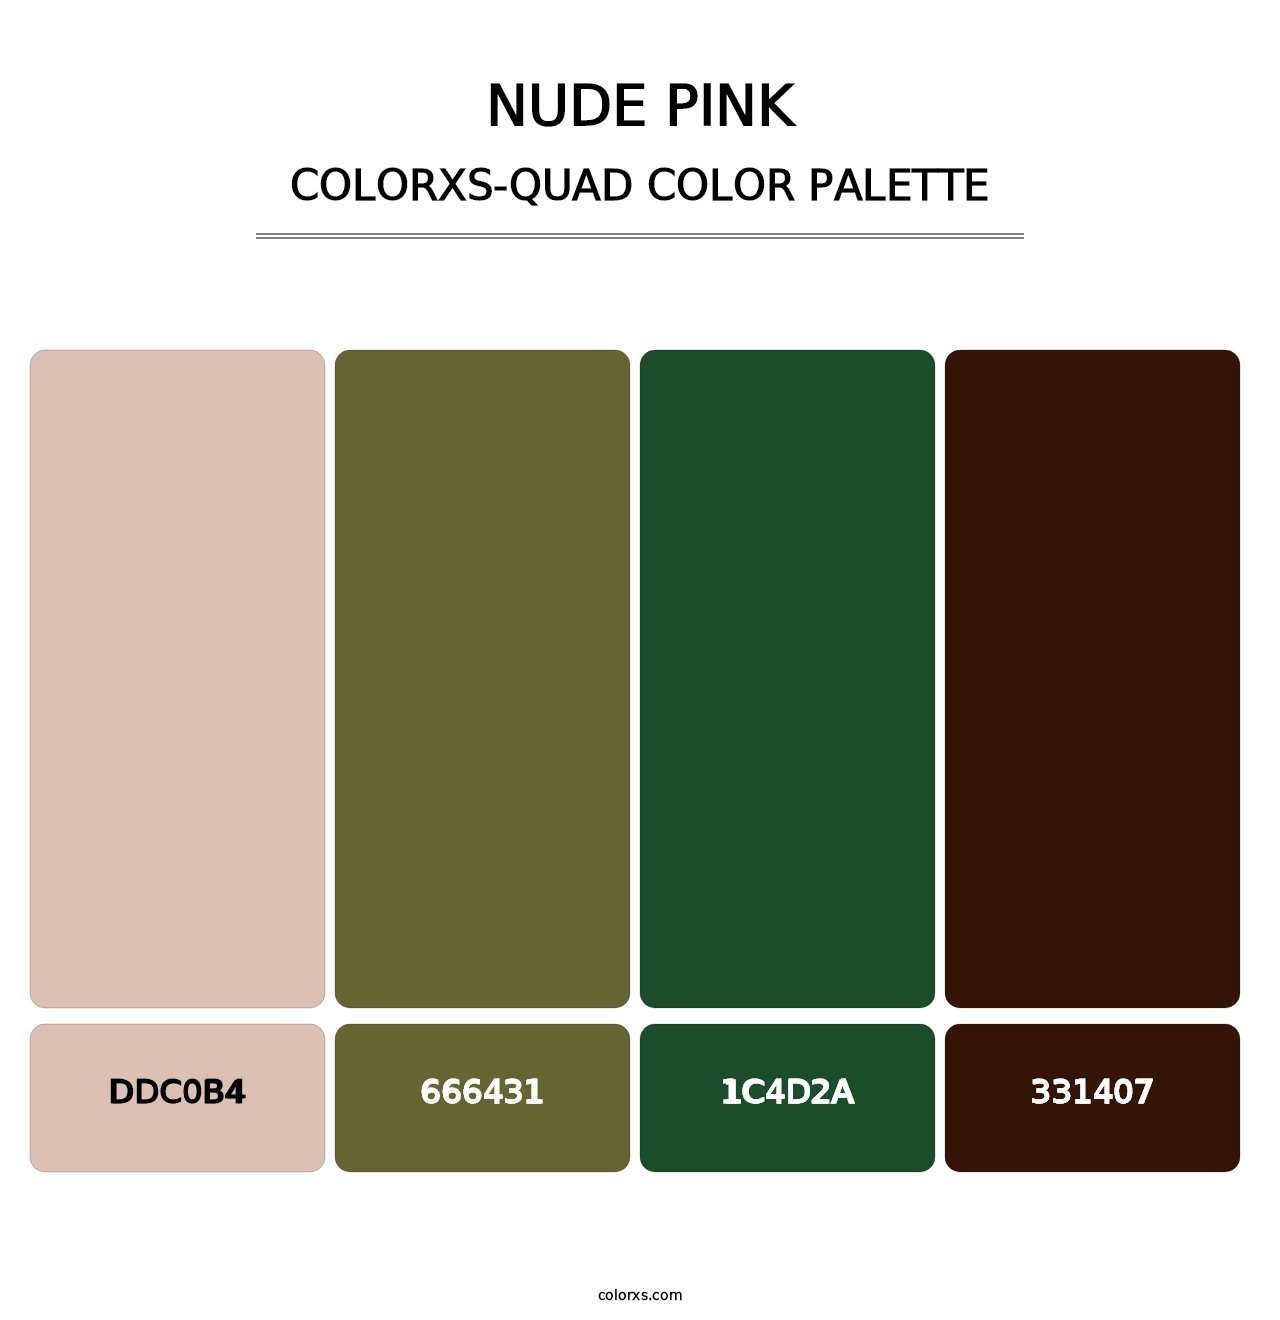 Nude Pink - Colorxs Quad Palette